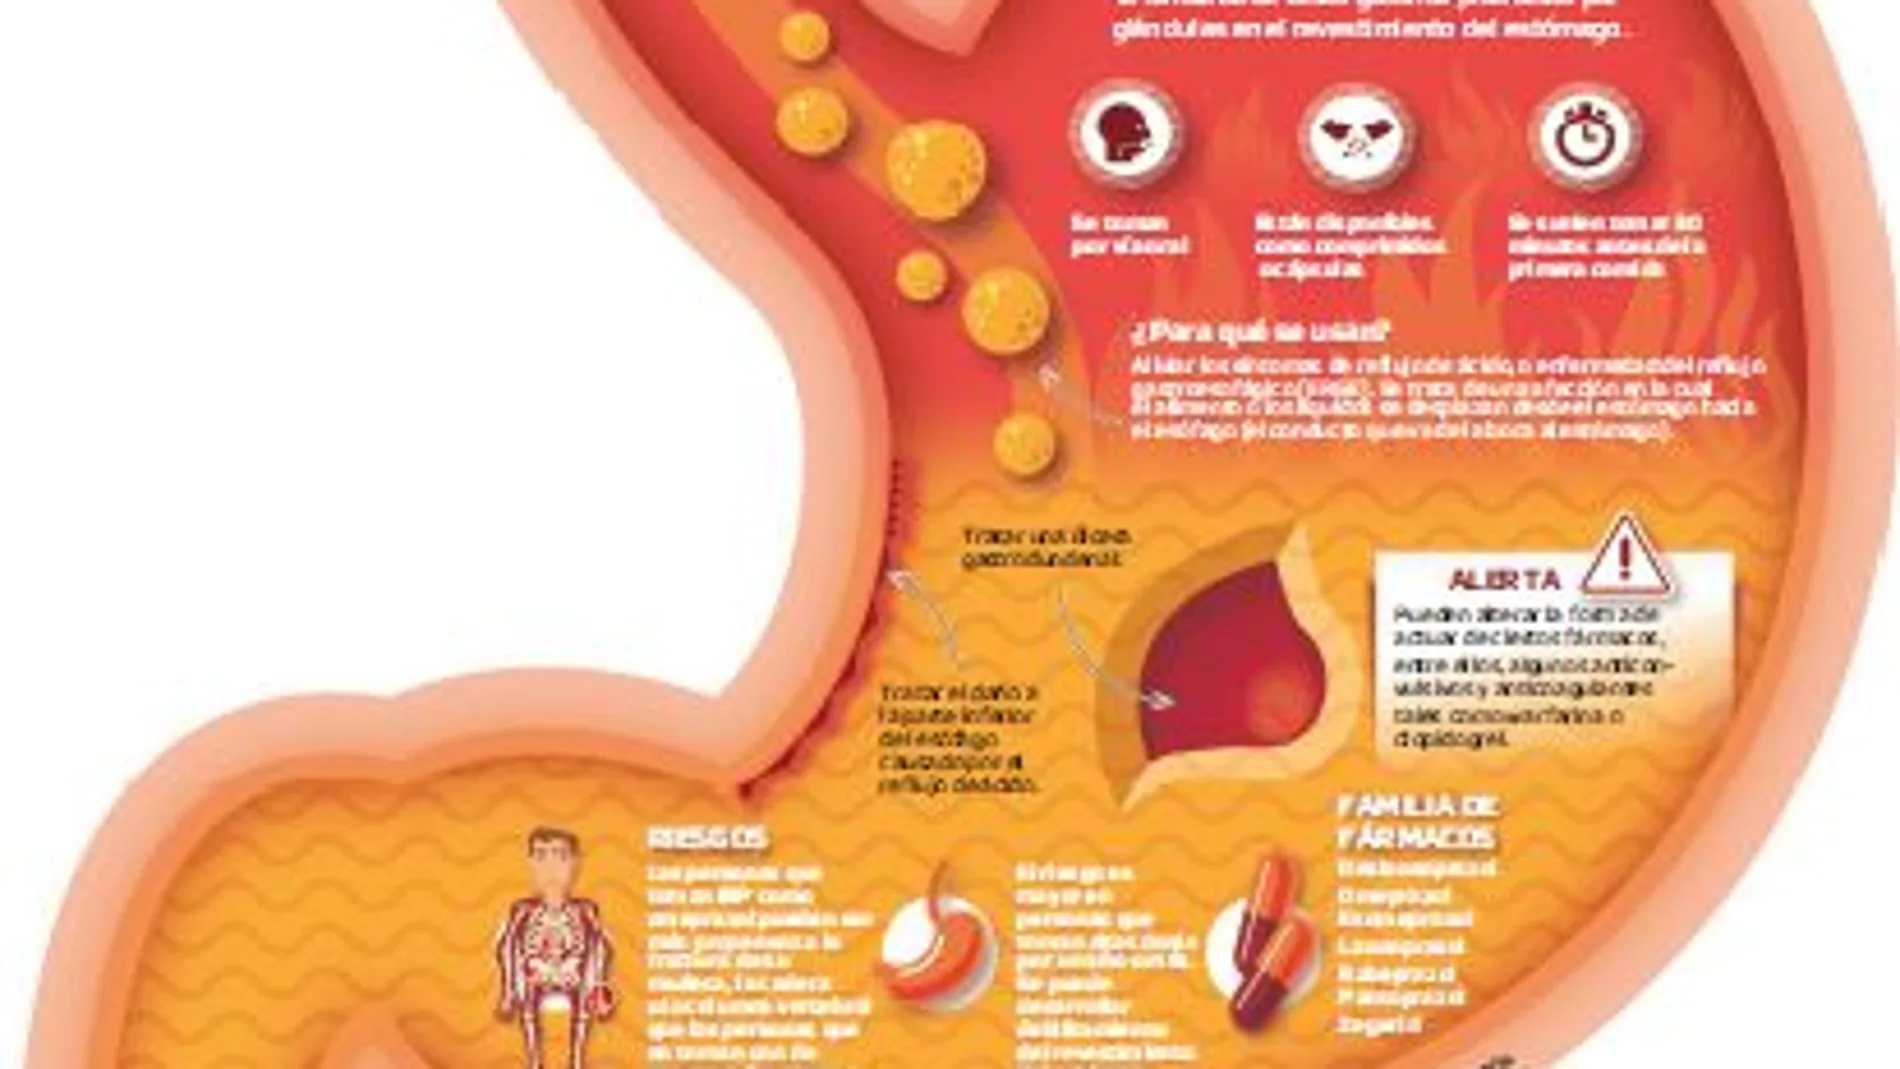 Gastroprotectores: Un abuso continuado atrofia al estómago